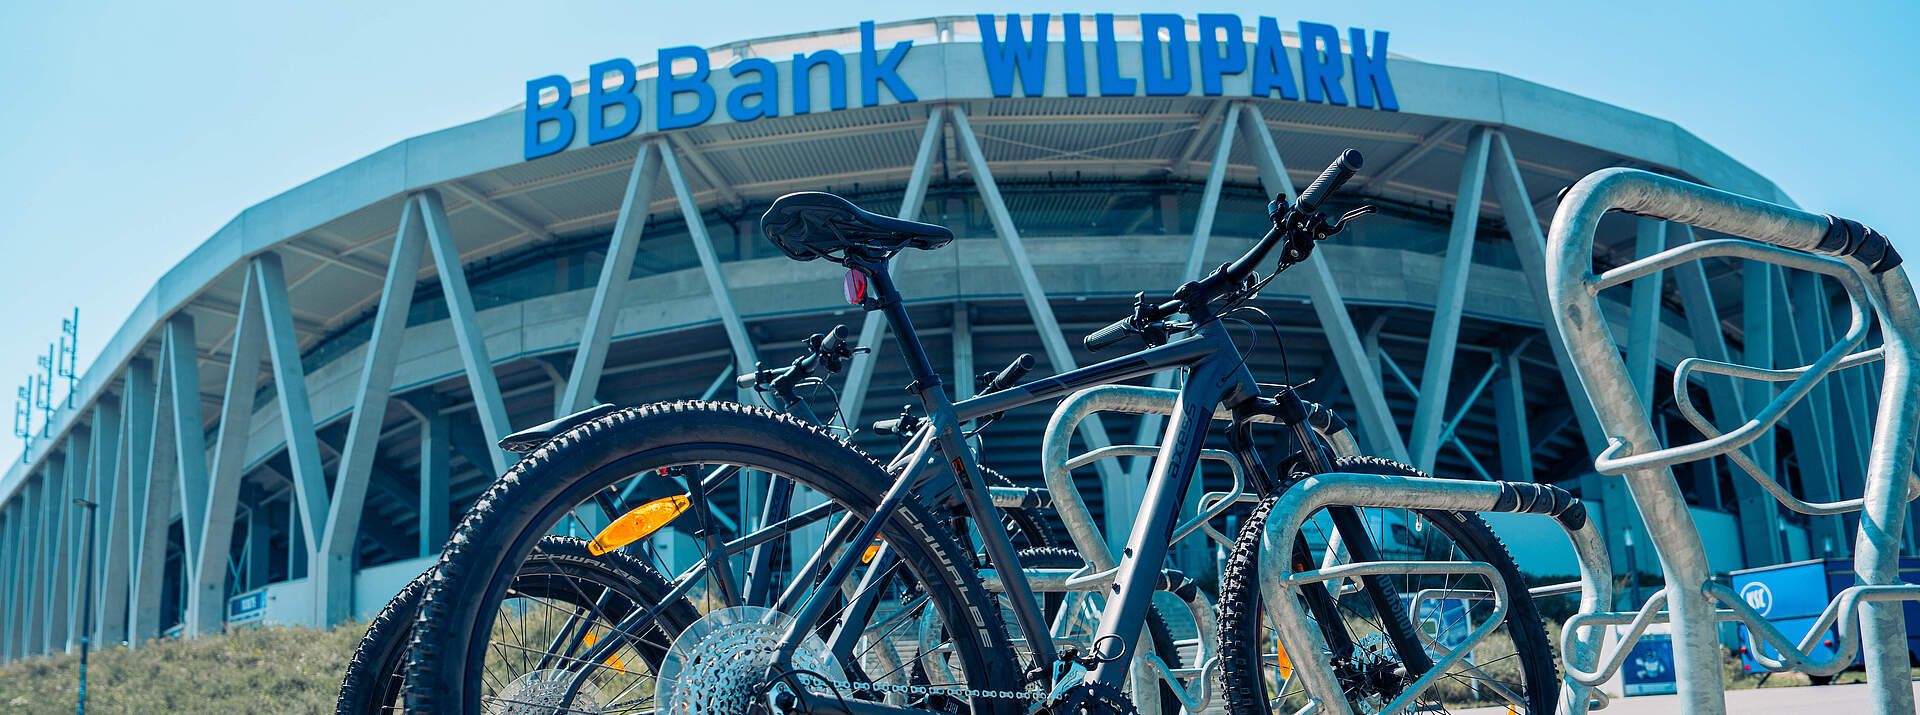 Fahrräder vor dem BBBank Wildpark